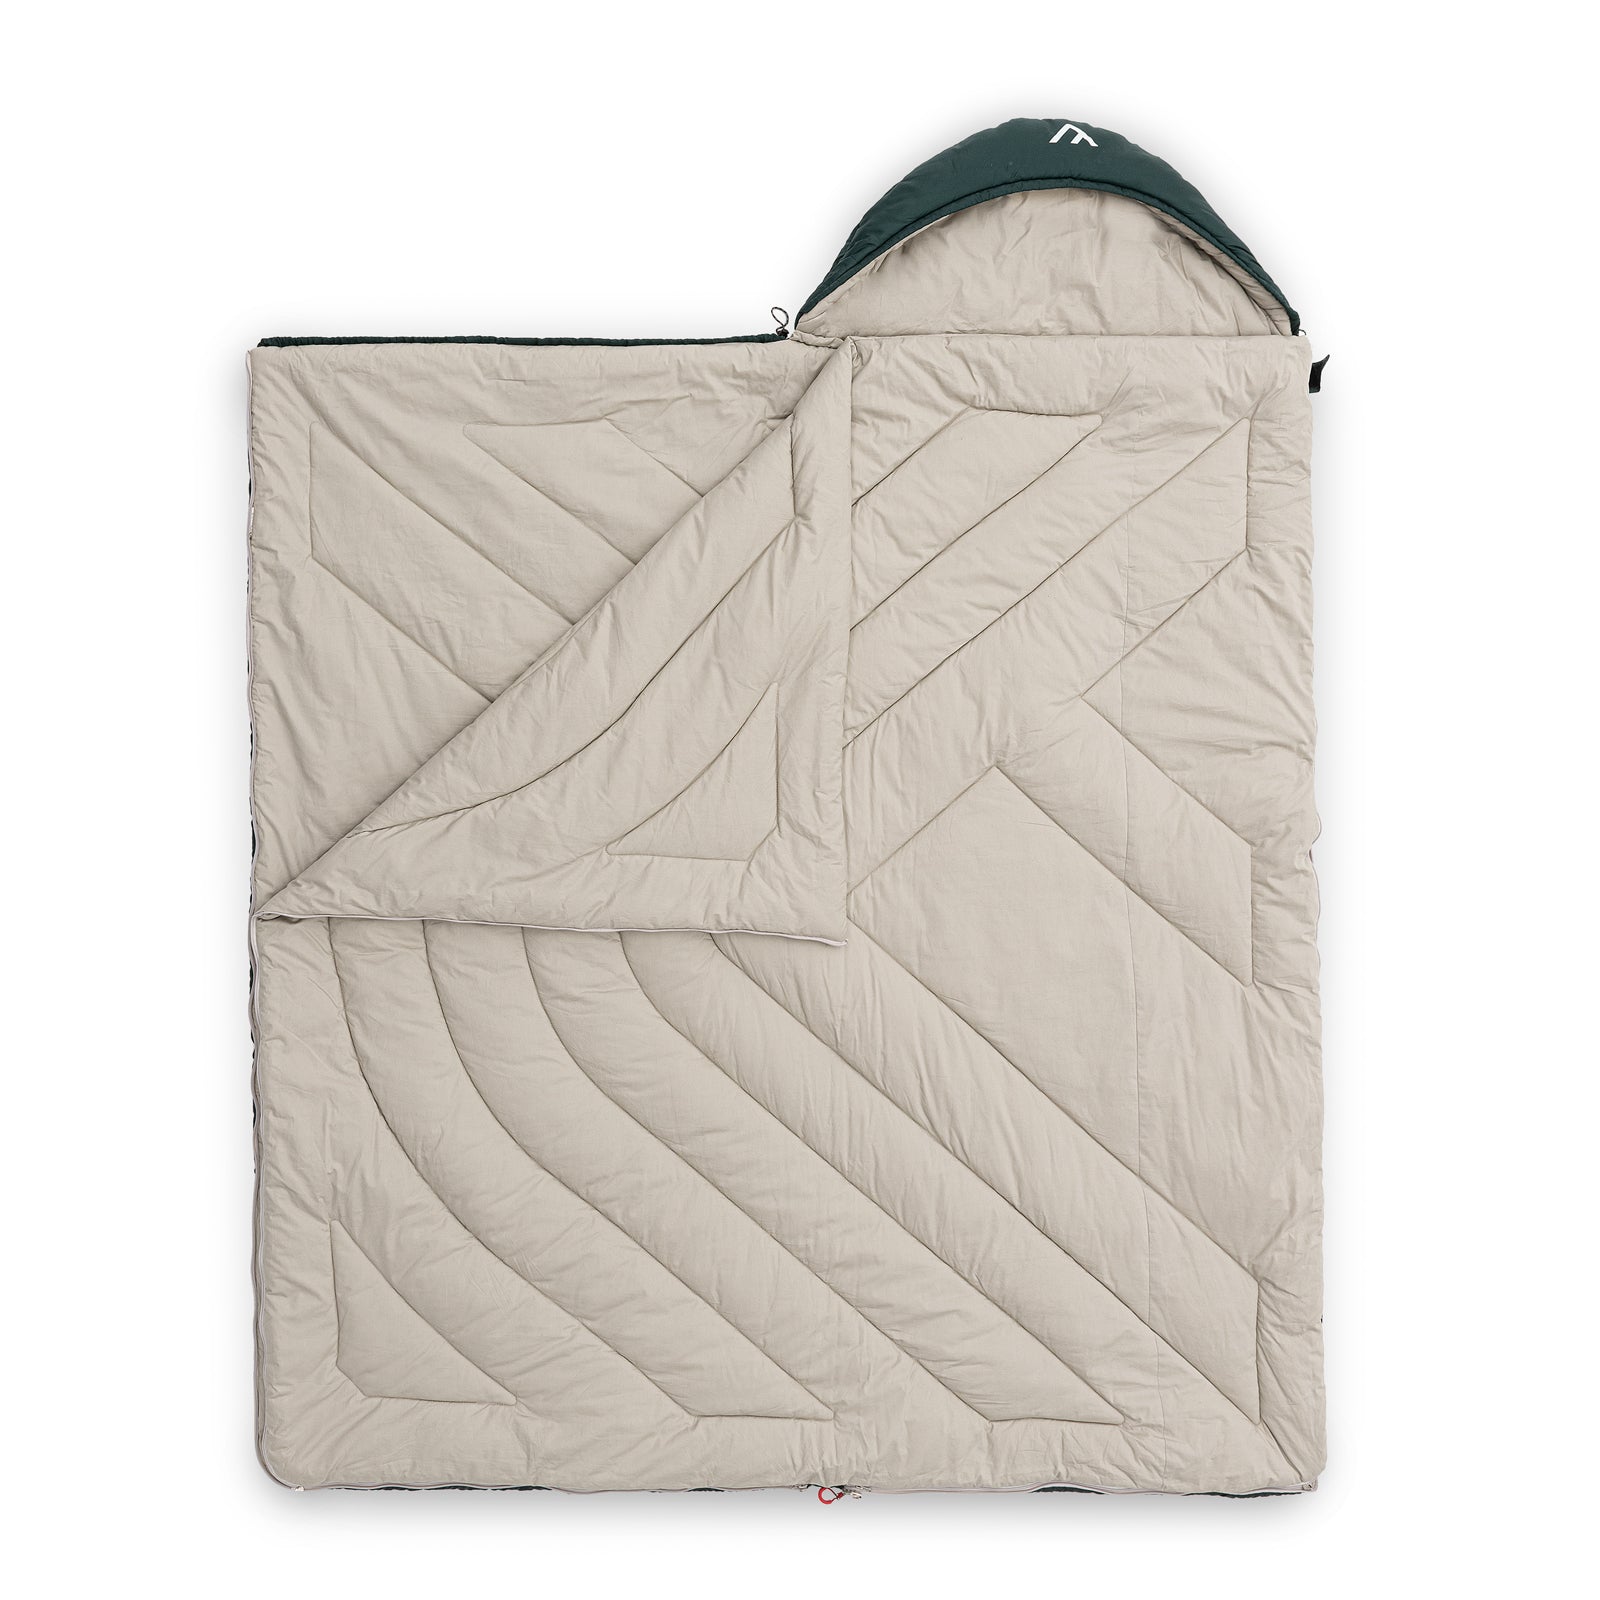 qeedo sleeping bag Fellow, versatile sleeping bag for adults